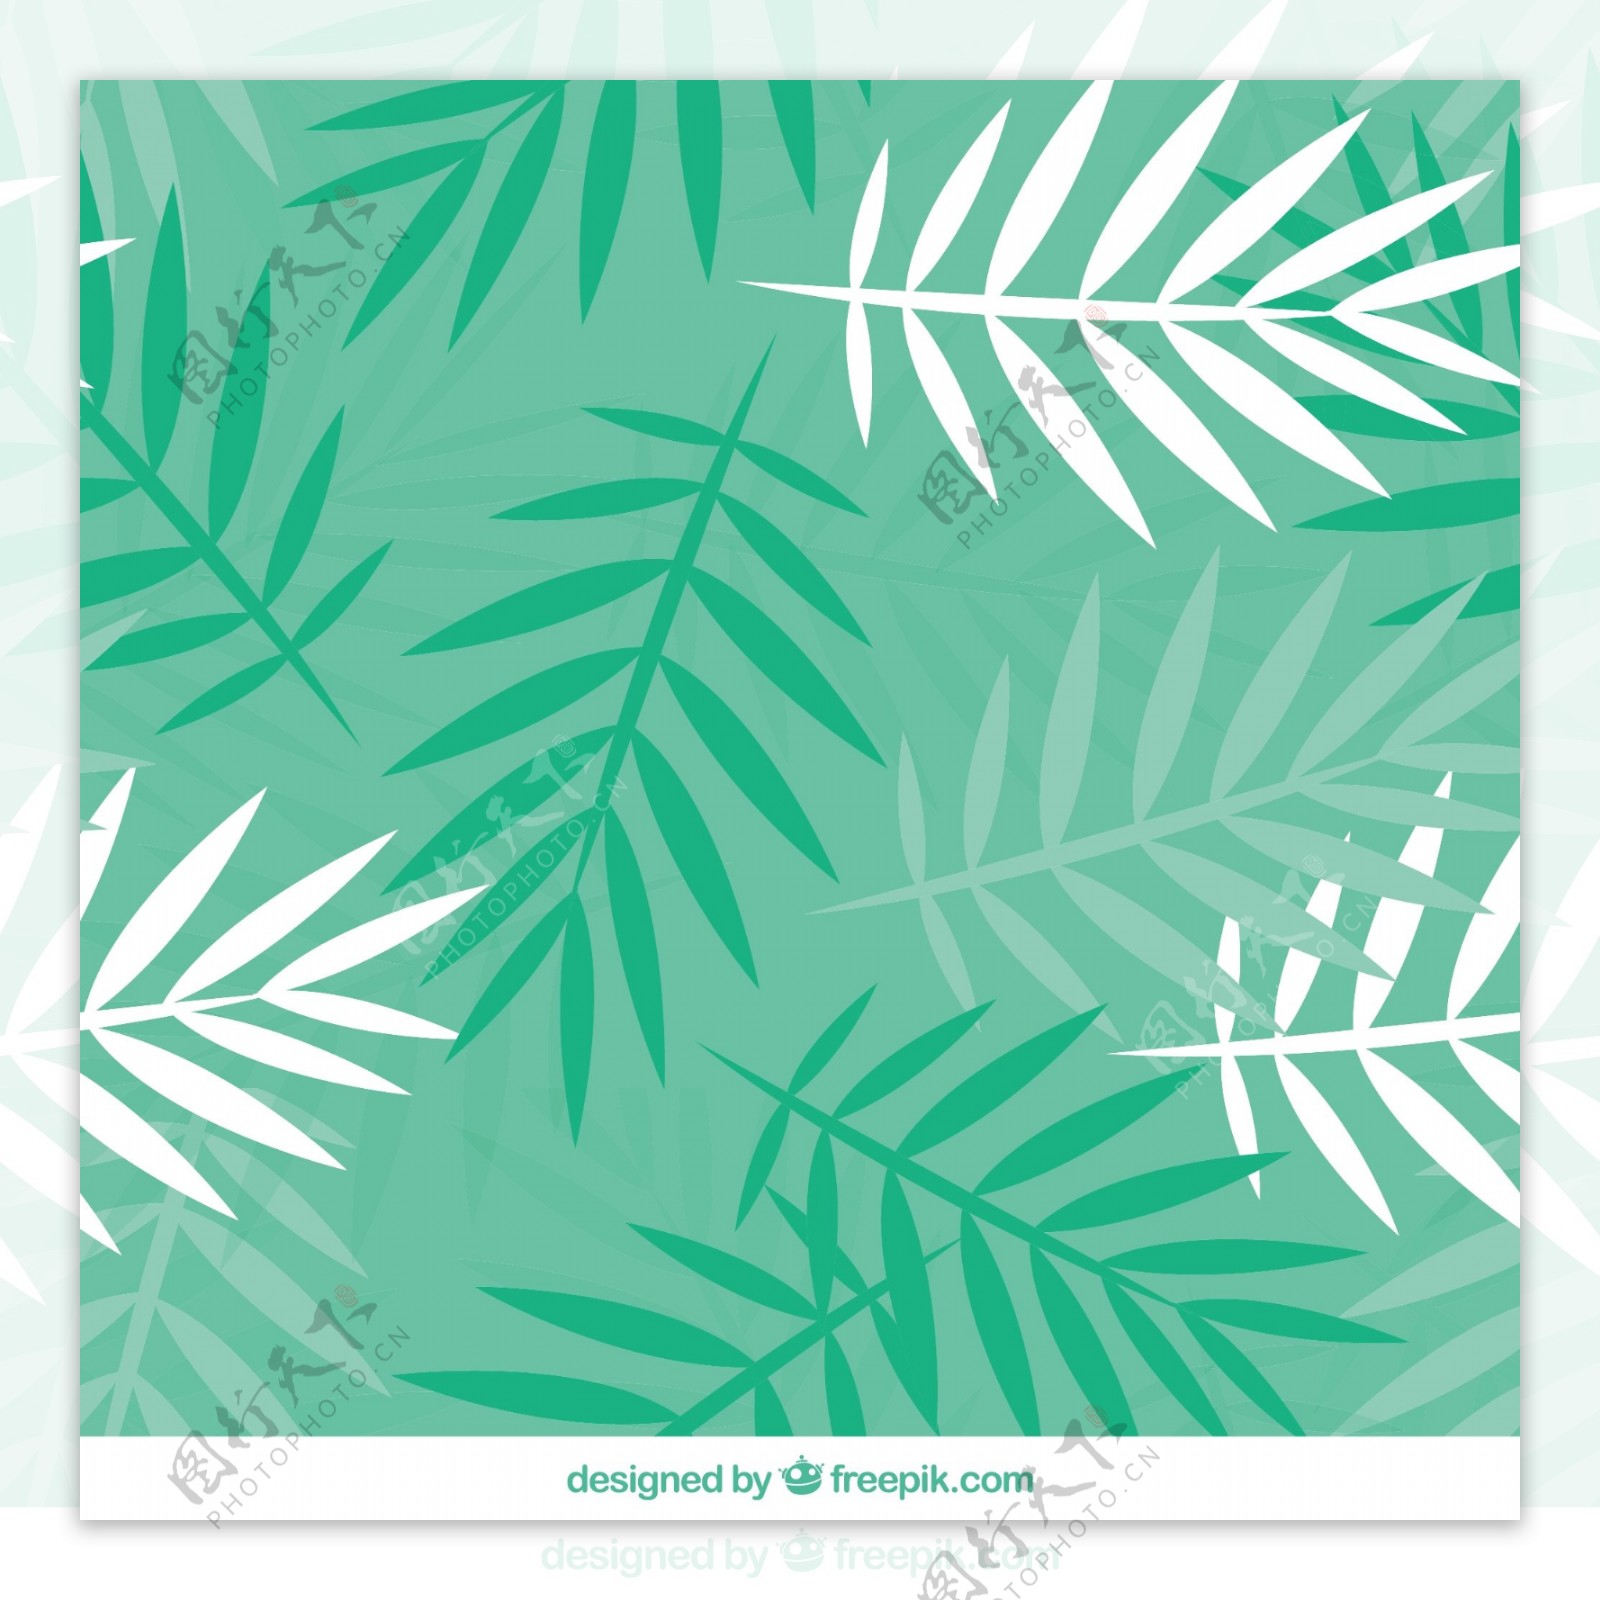 平面设计中的棕榈树叶绿色图案